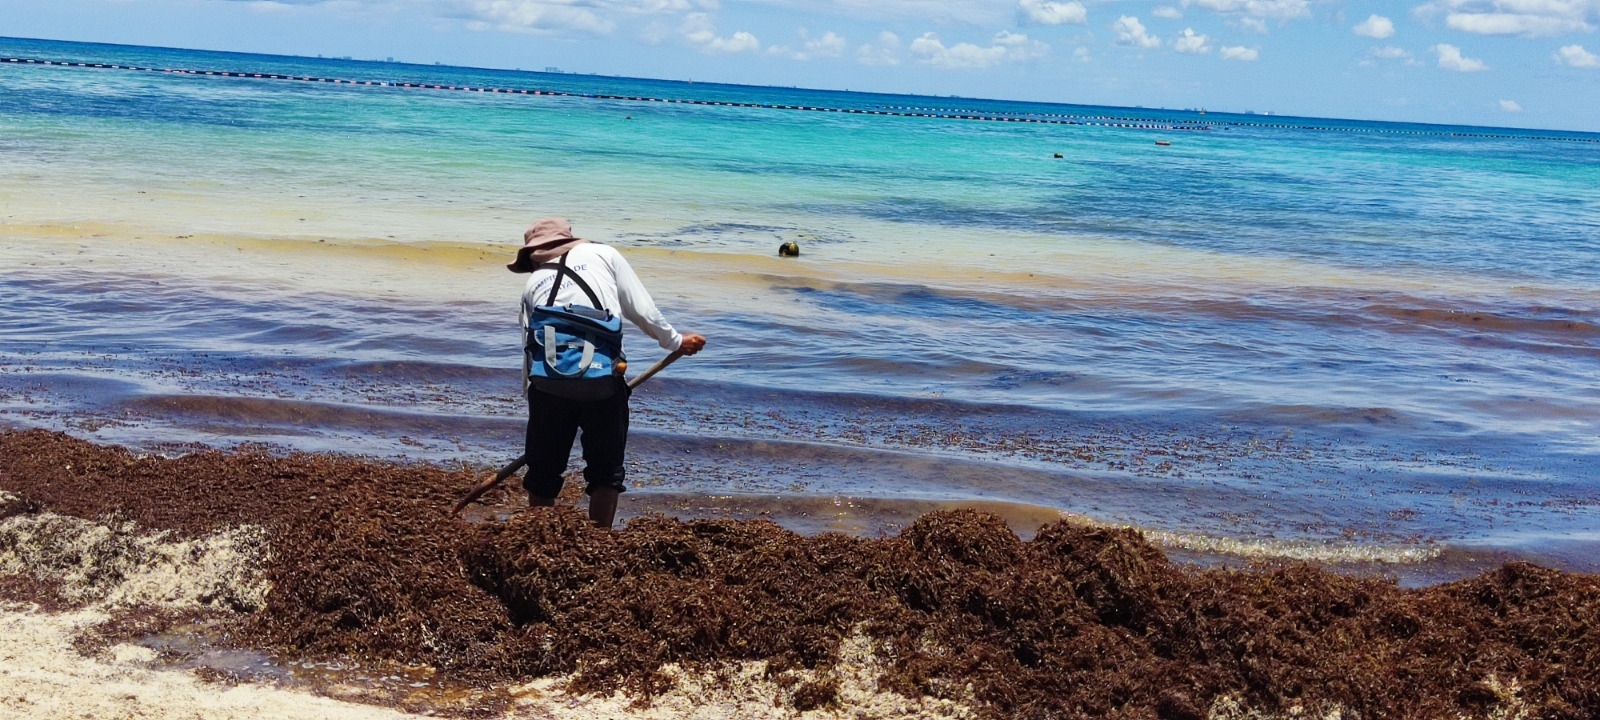 Recolectores de sargazo en Playa del Carmen aseguran que no cuentan con equipo para realizar su labor